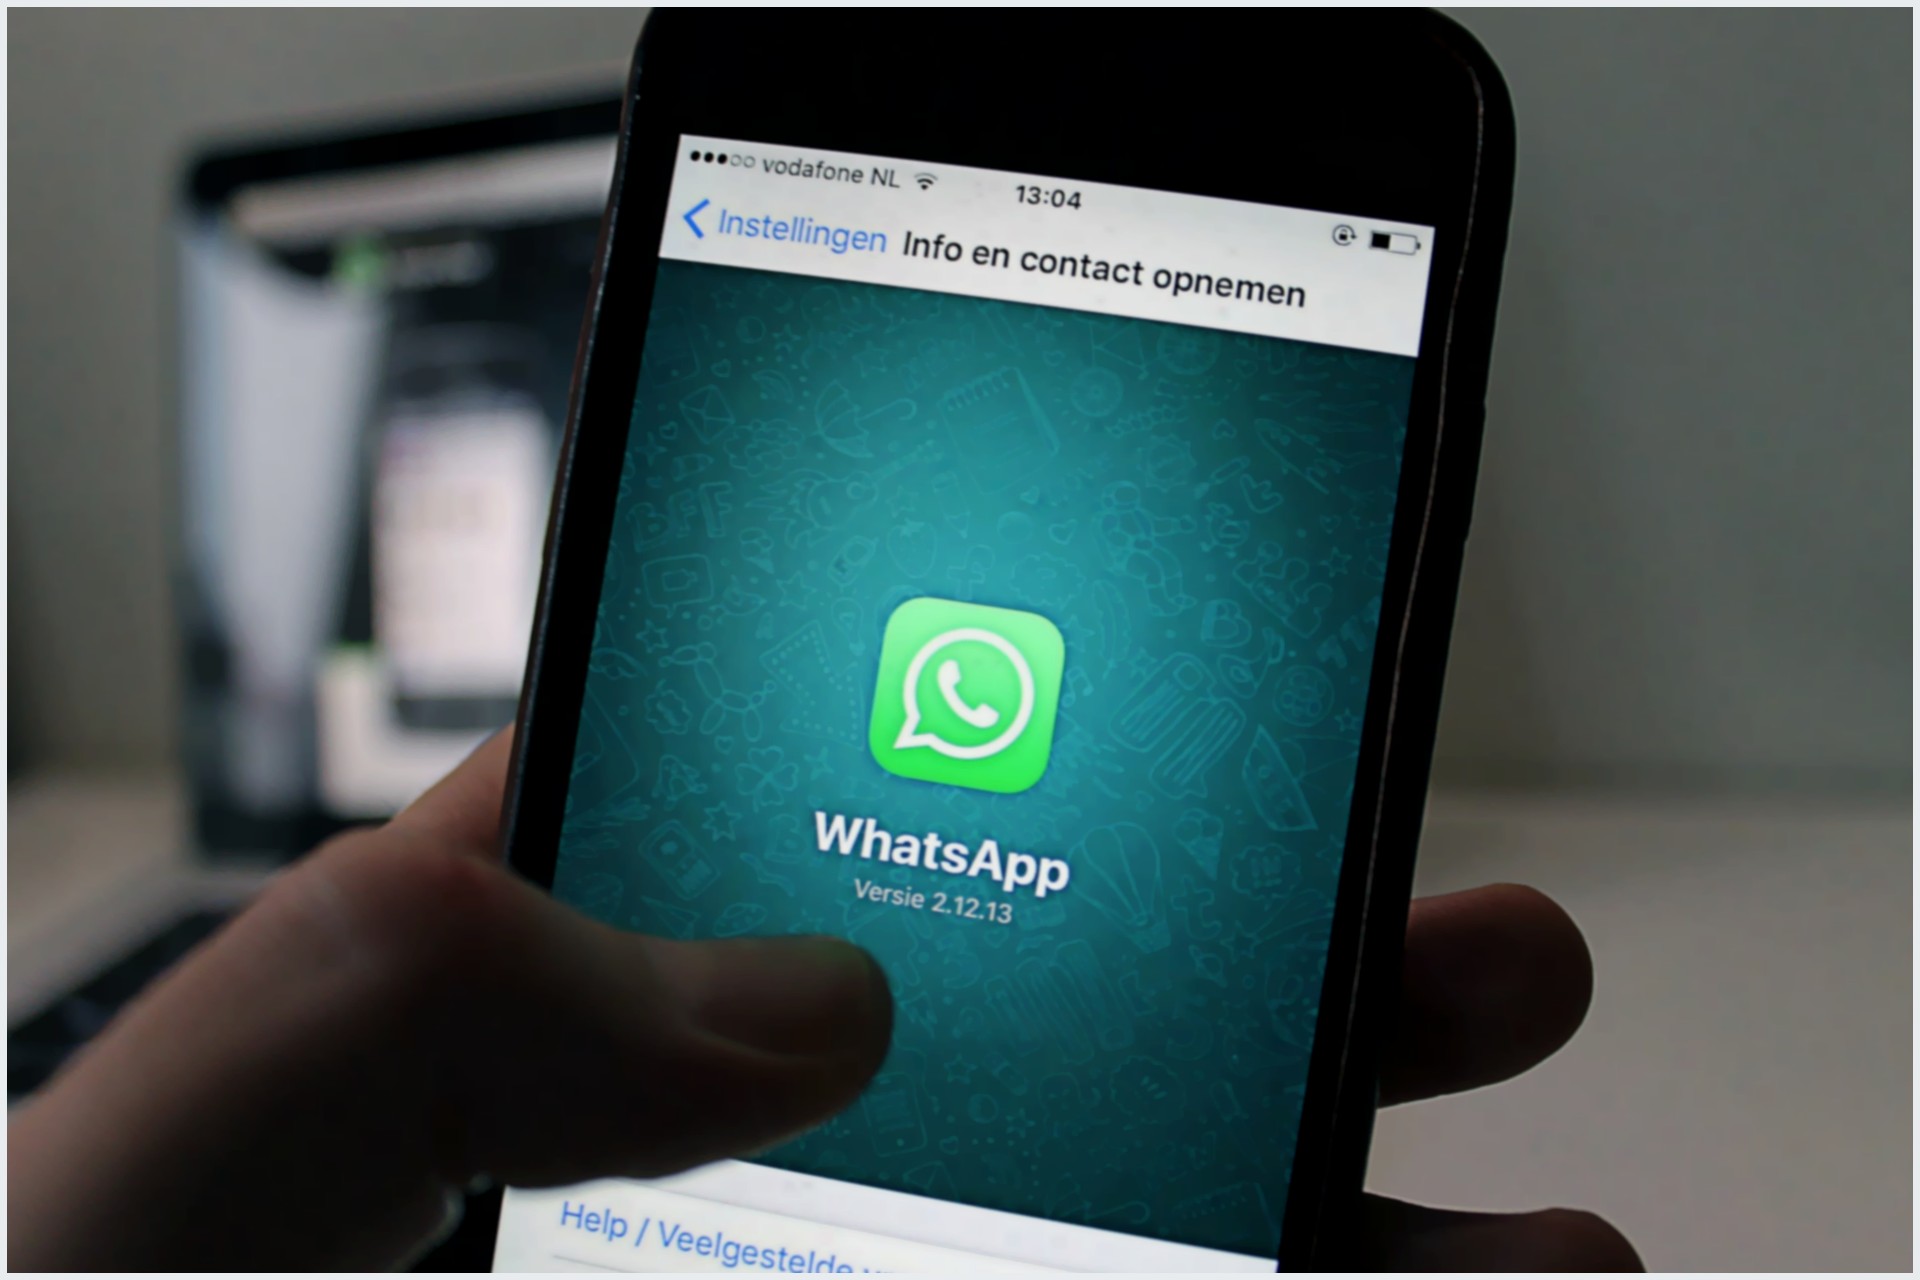 Personalize Agora: Transforme seu WhatsApp com Novo Papel de Parede!